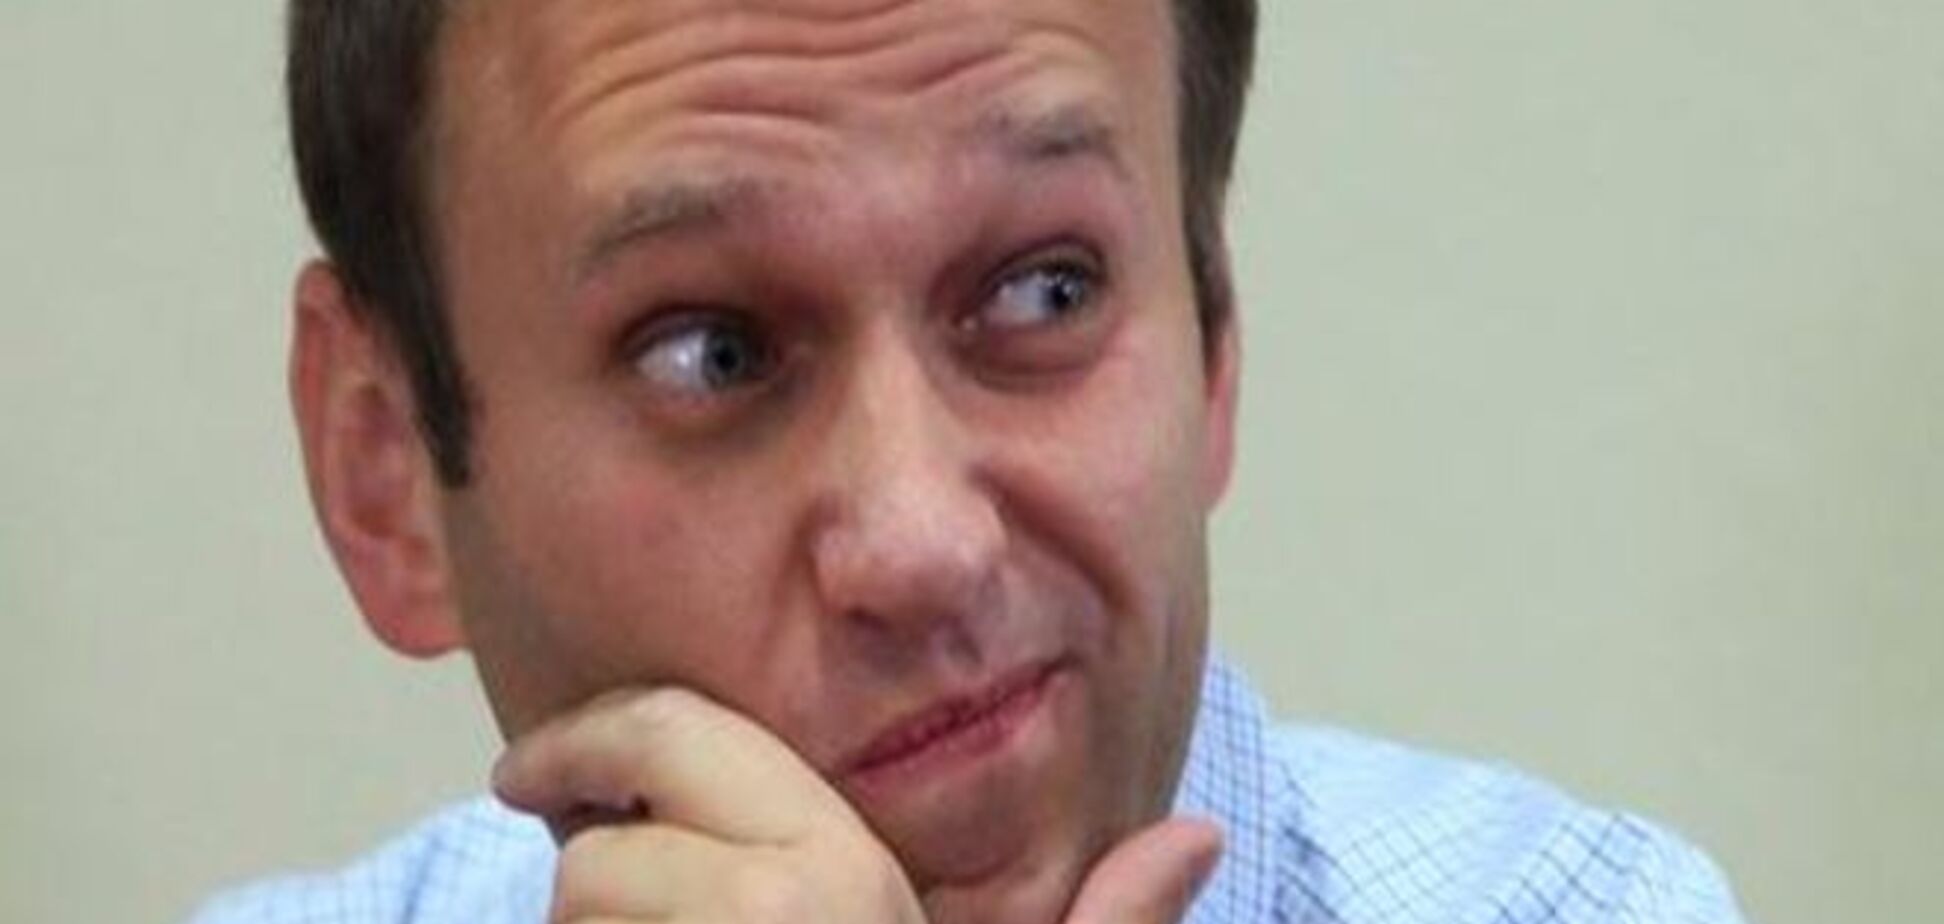 Эксперты не пропустили антикоррупционную инициативу Навального